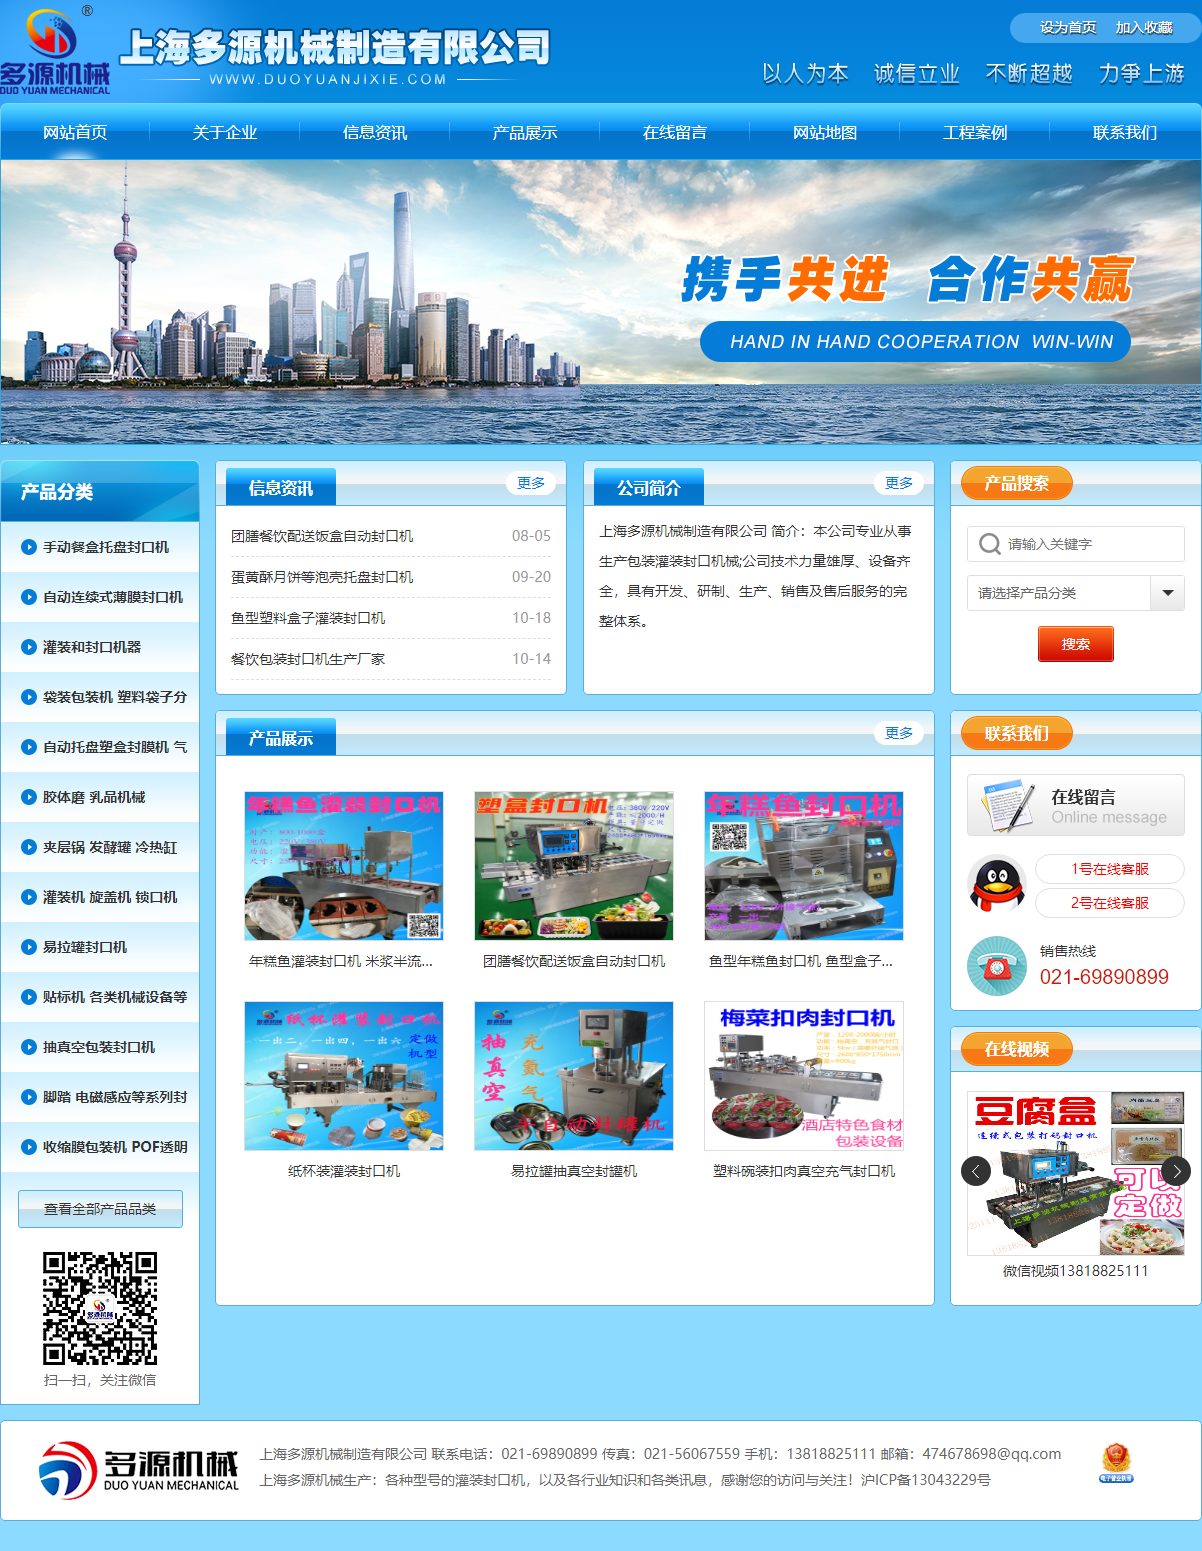 上海多源机械制造有限公司网站案例